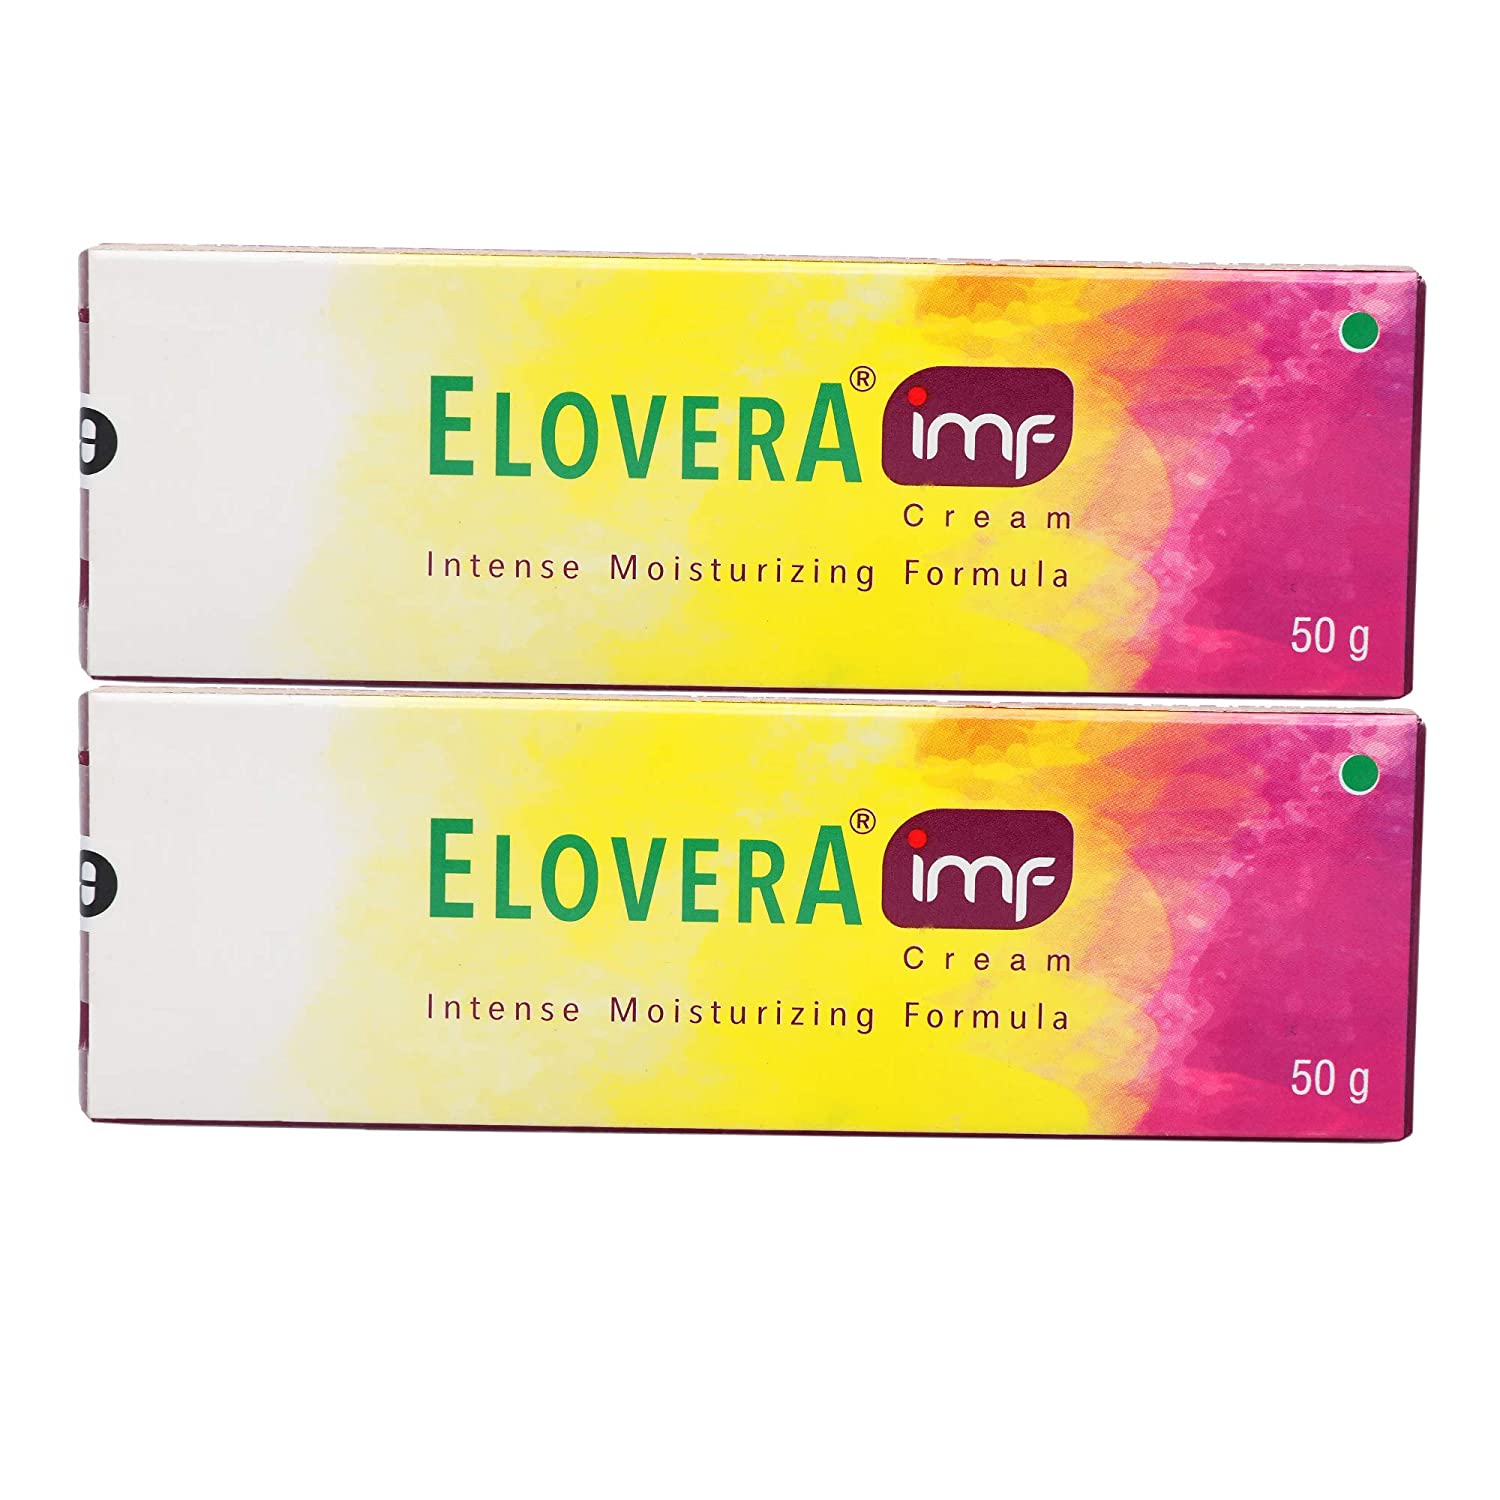 Glenmark Elovera IMF  cream 50g (Pack of 2)